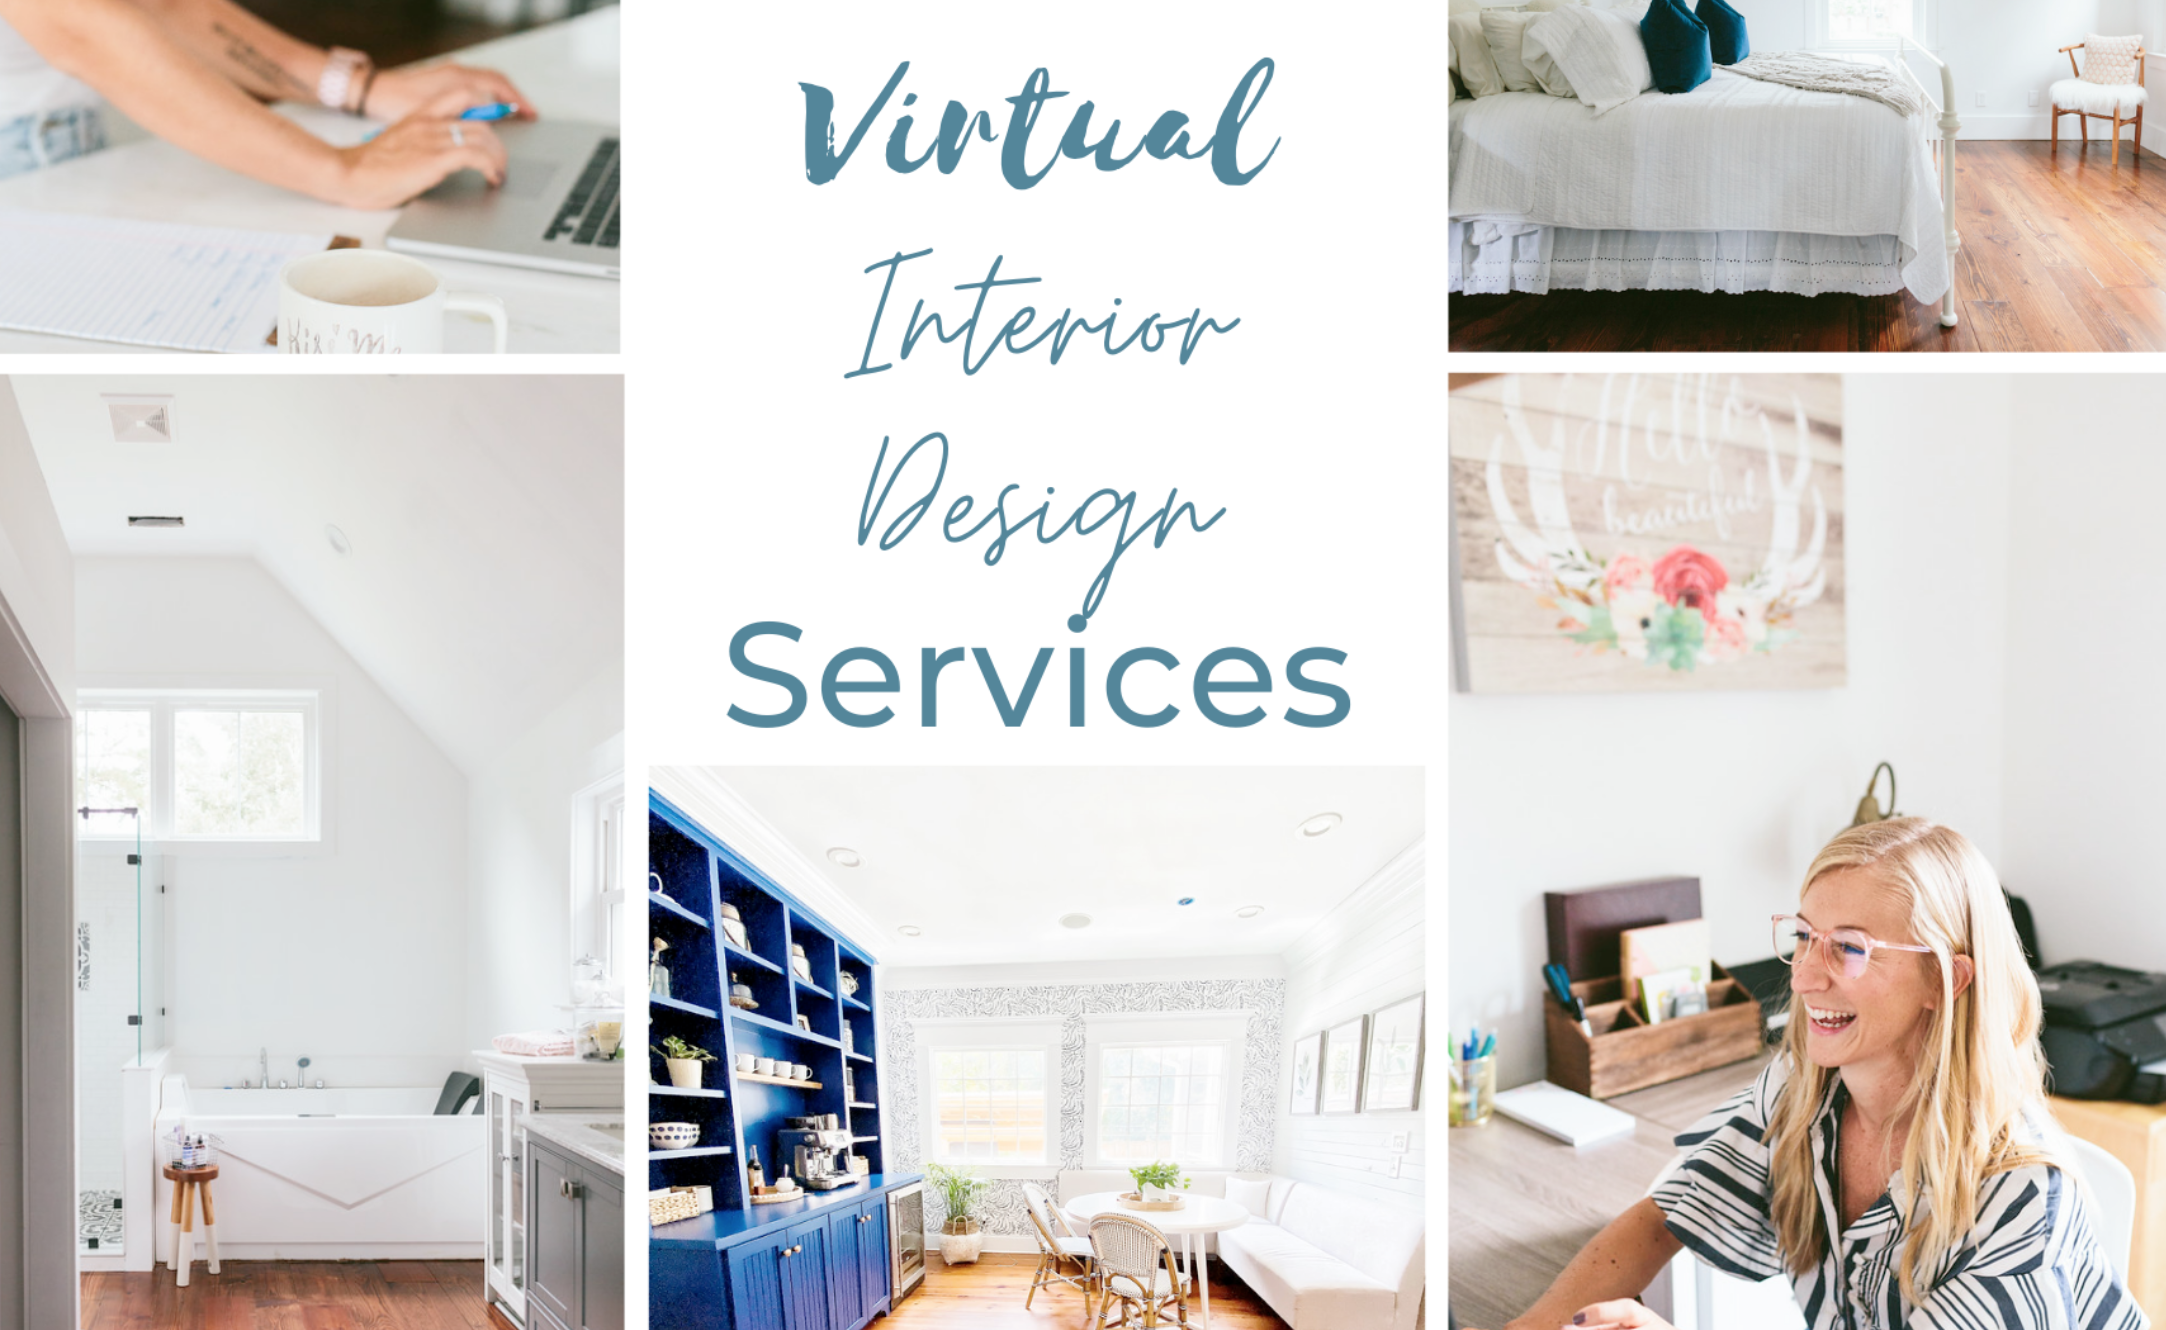 Virtual Services